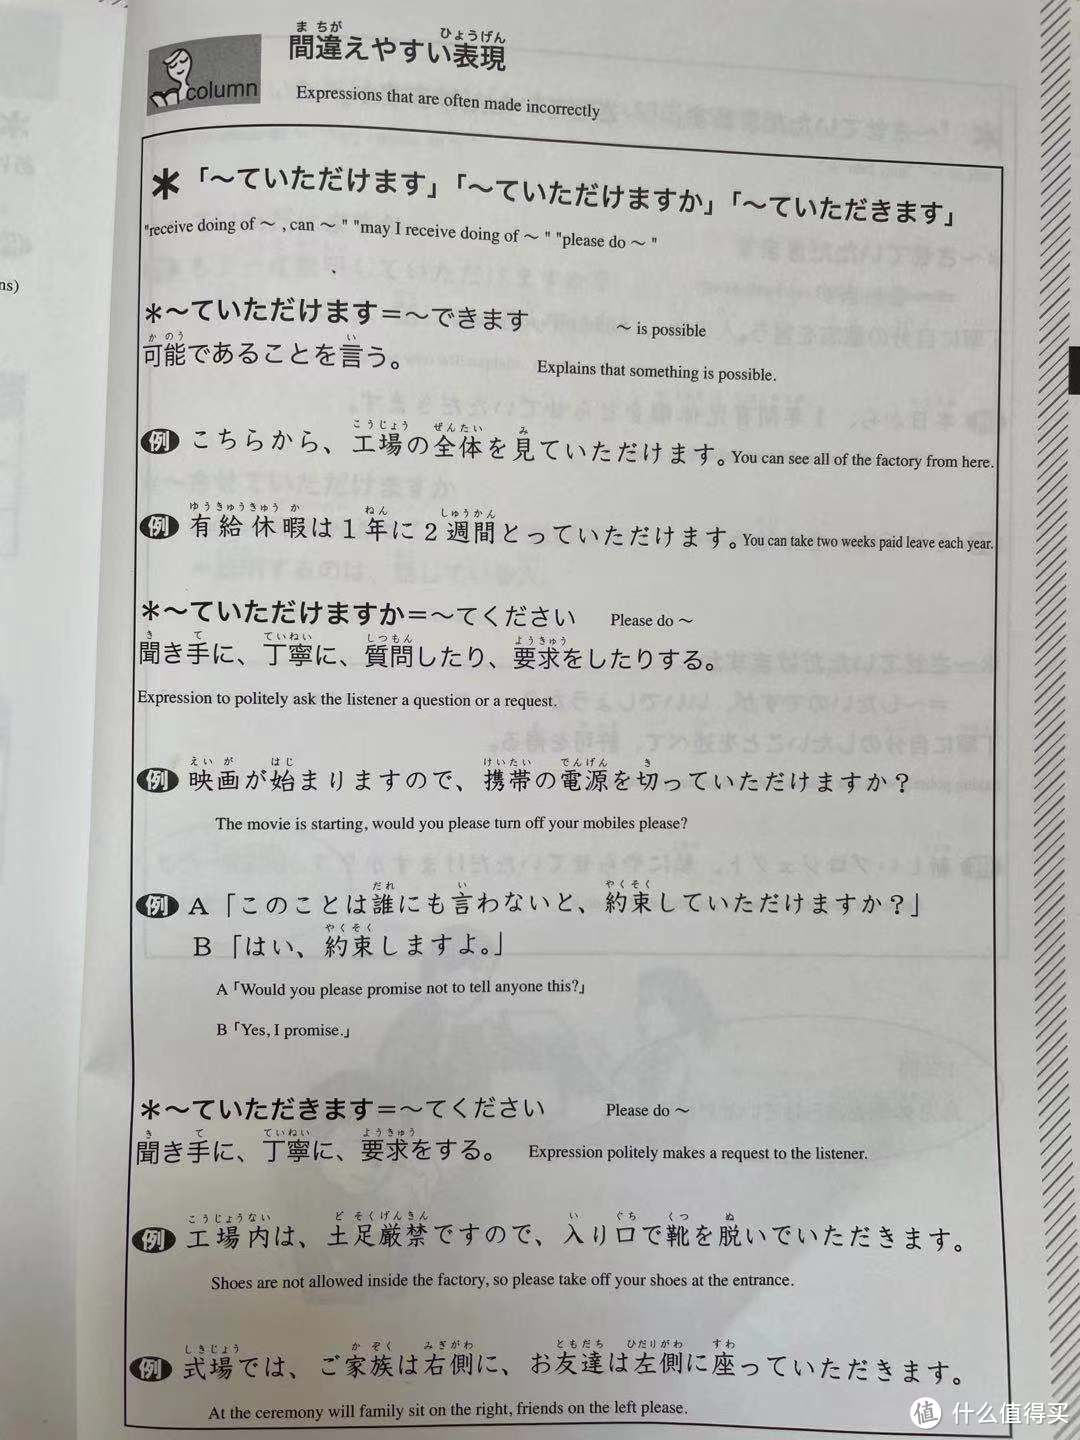 暑期充电日语进阶之——一本练习册完美解决授受问题